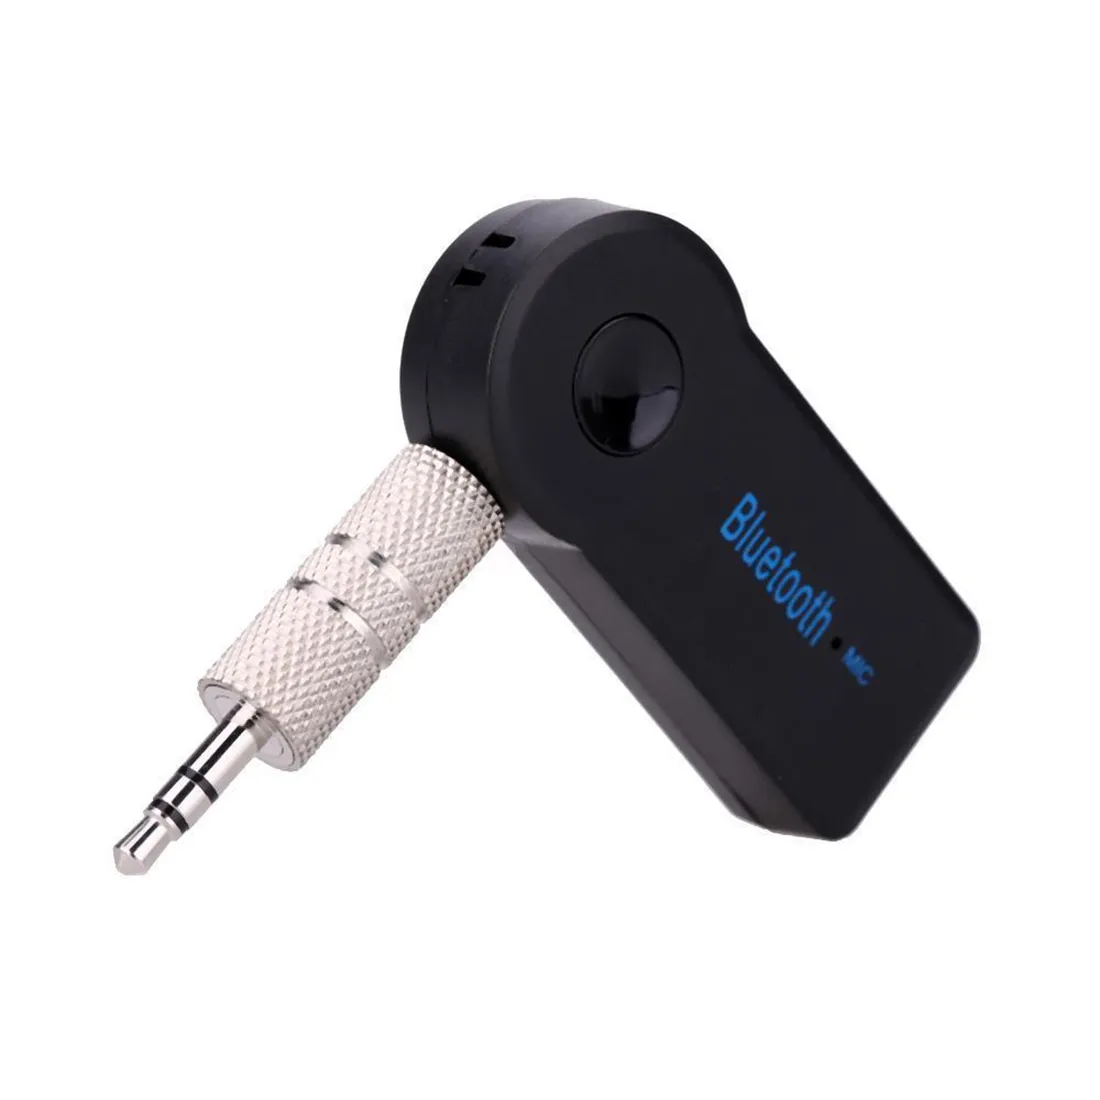 Araba için 3.5mm Kablosuz Bluetooth Alıcısı Eller-Serbest Ev Ses Sistemi C9AH